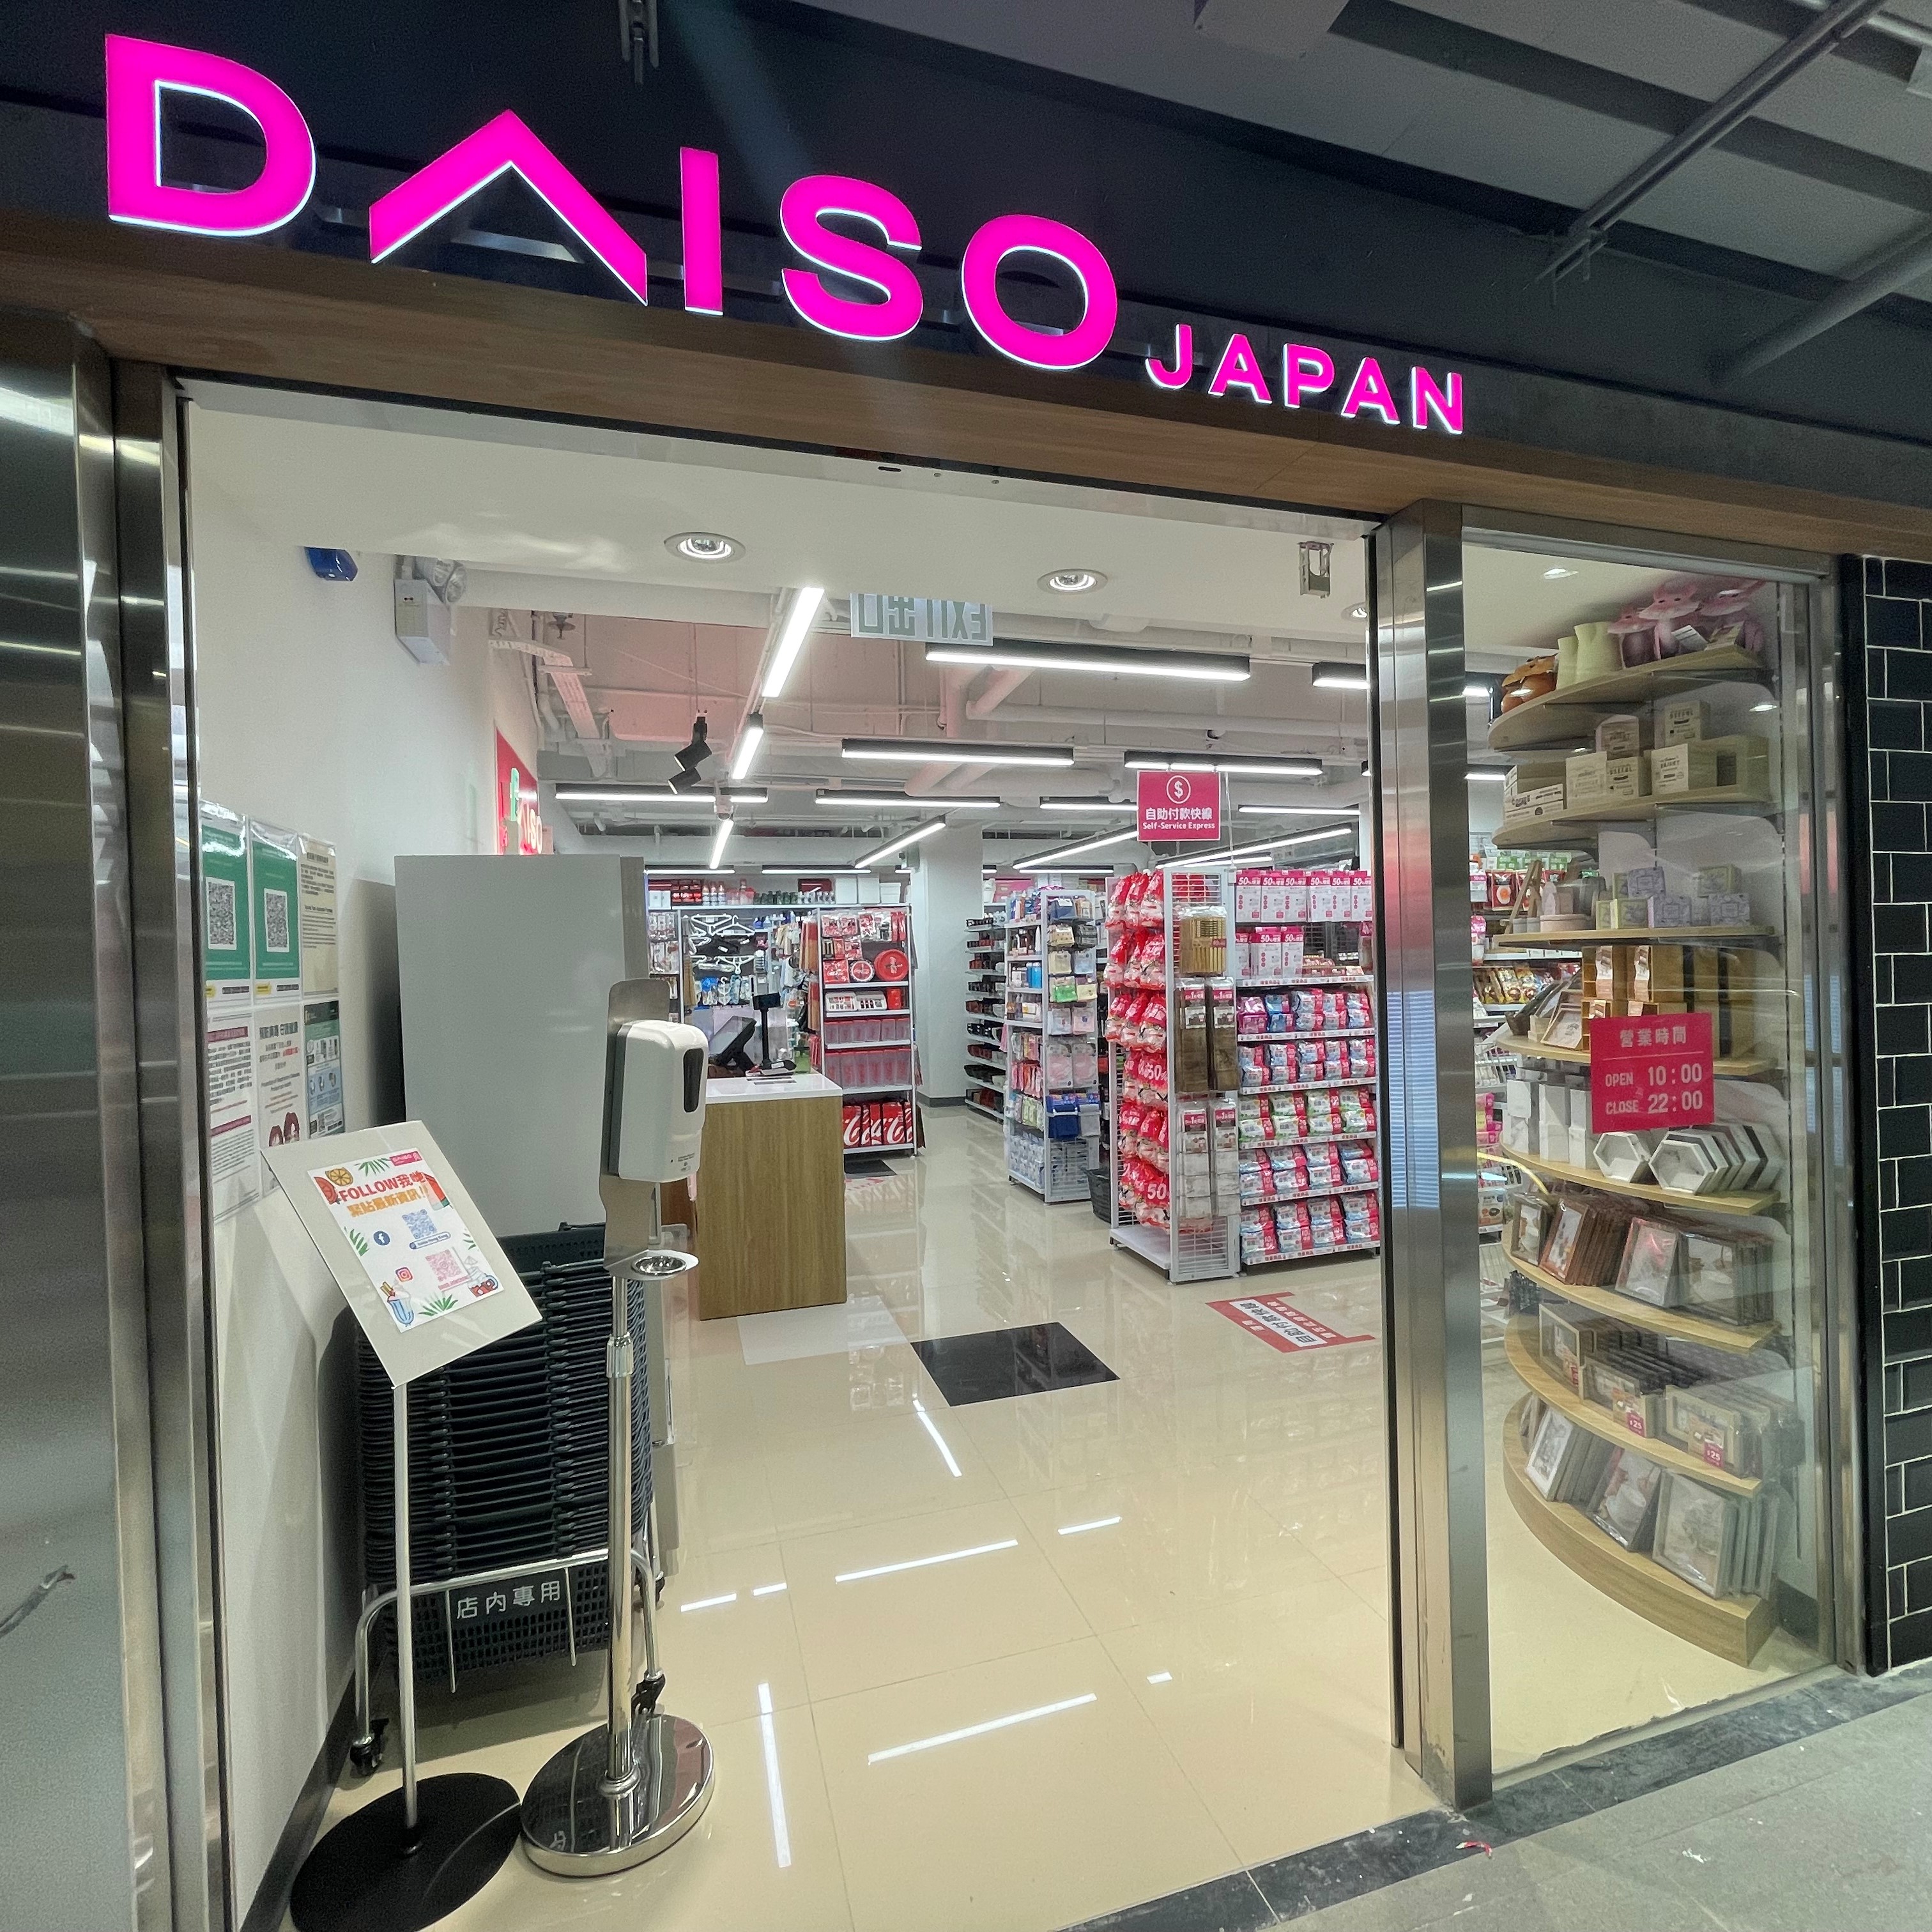 Daiso Japan 利东店